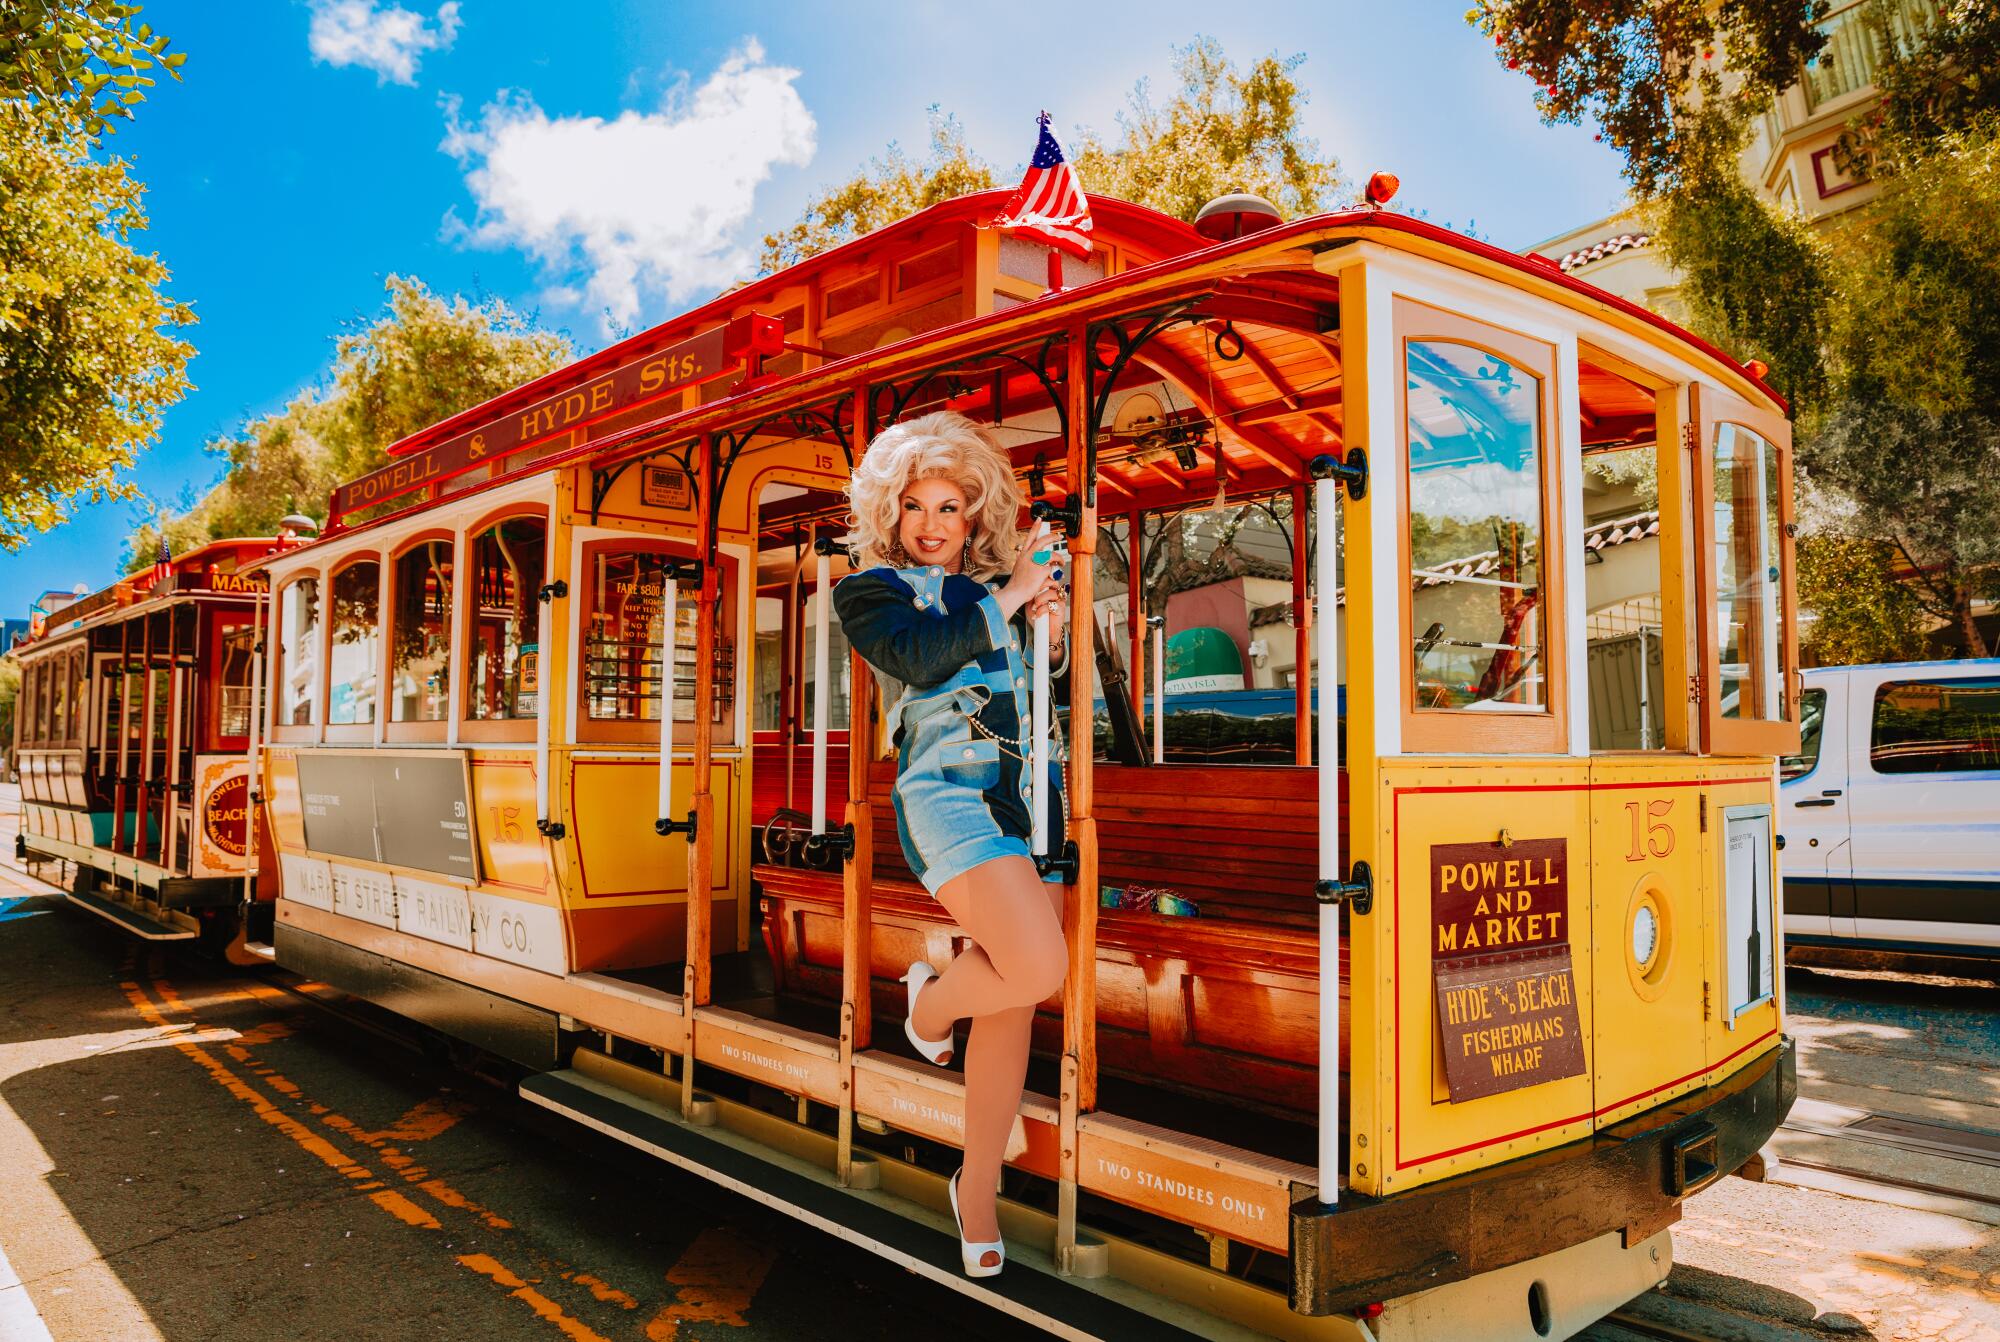 A drag performer on a San Francisco trolley.